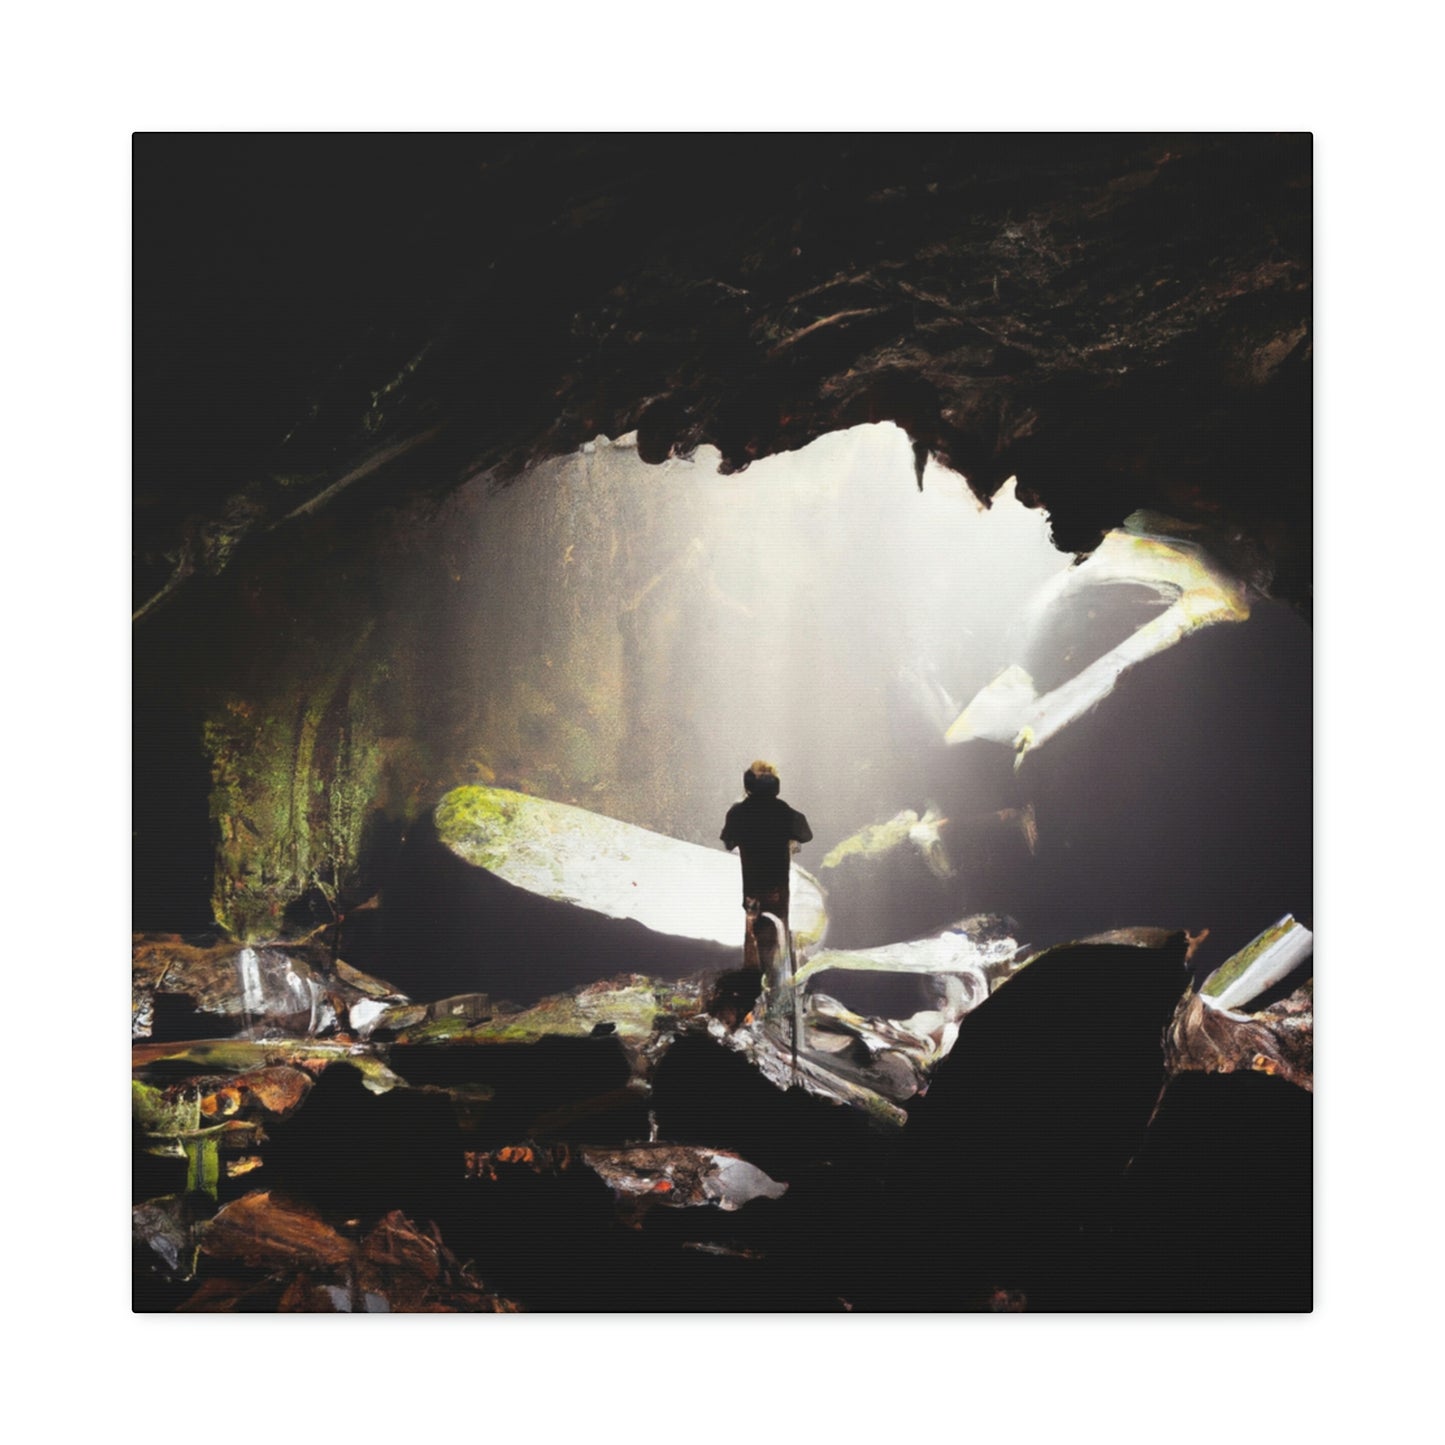 El misterio de la cueva abandonada - The Alien Canva